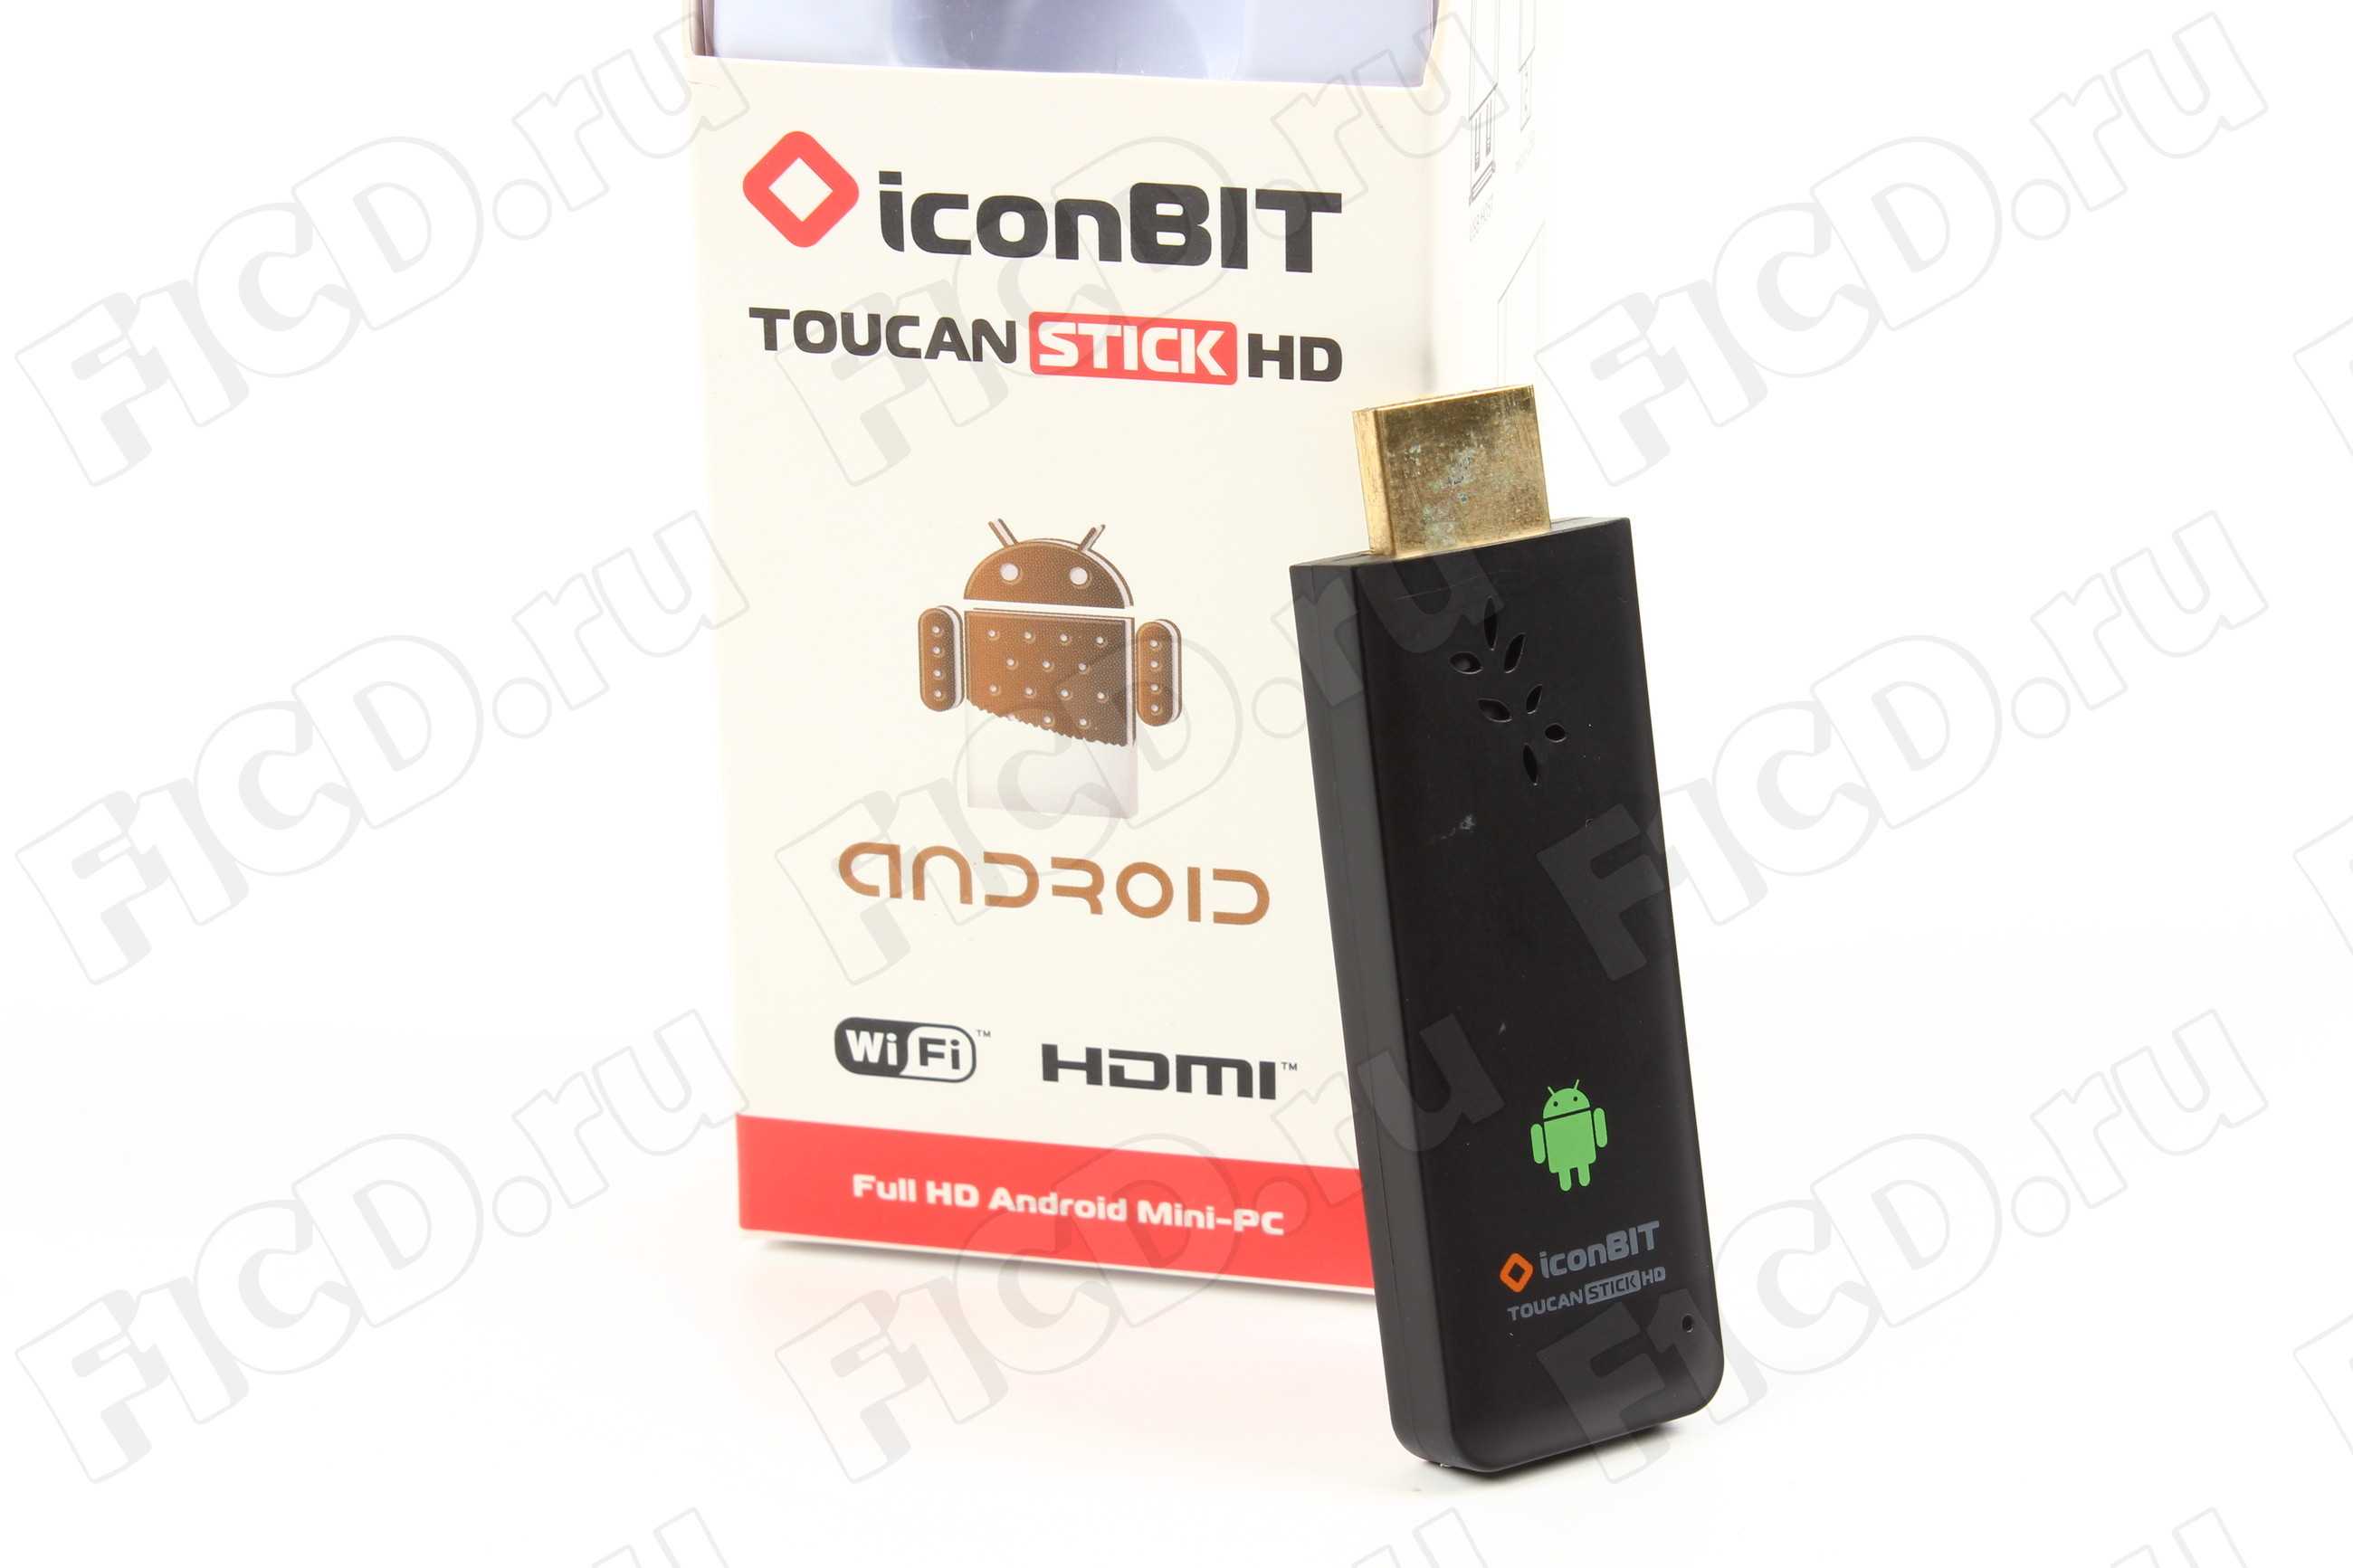 Медиаплеер iconbit toucan stick 3d — купить, цена и характеристики, отзывы